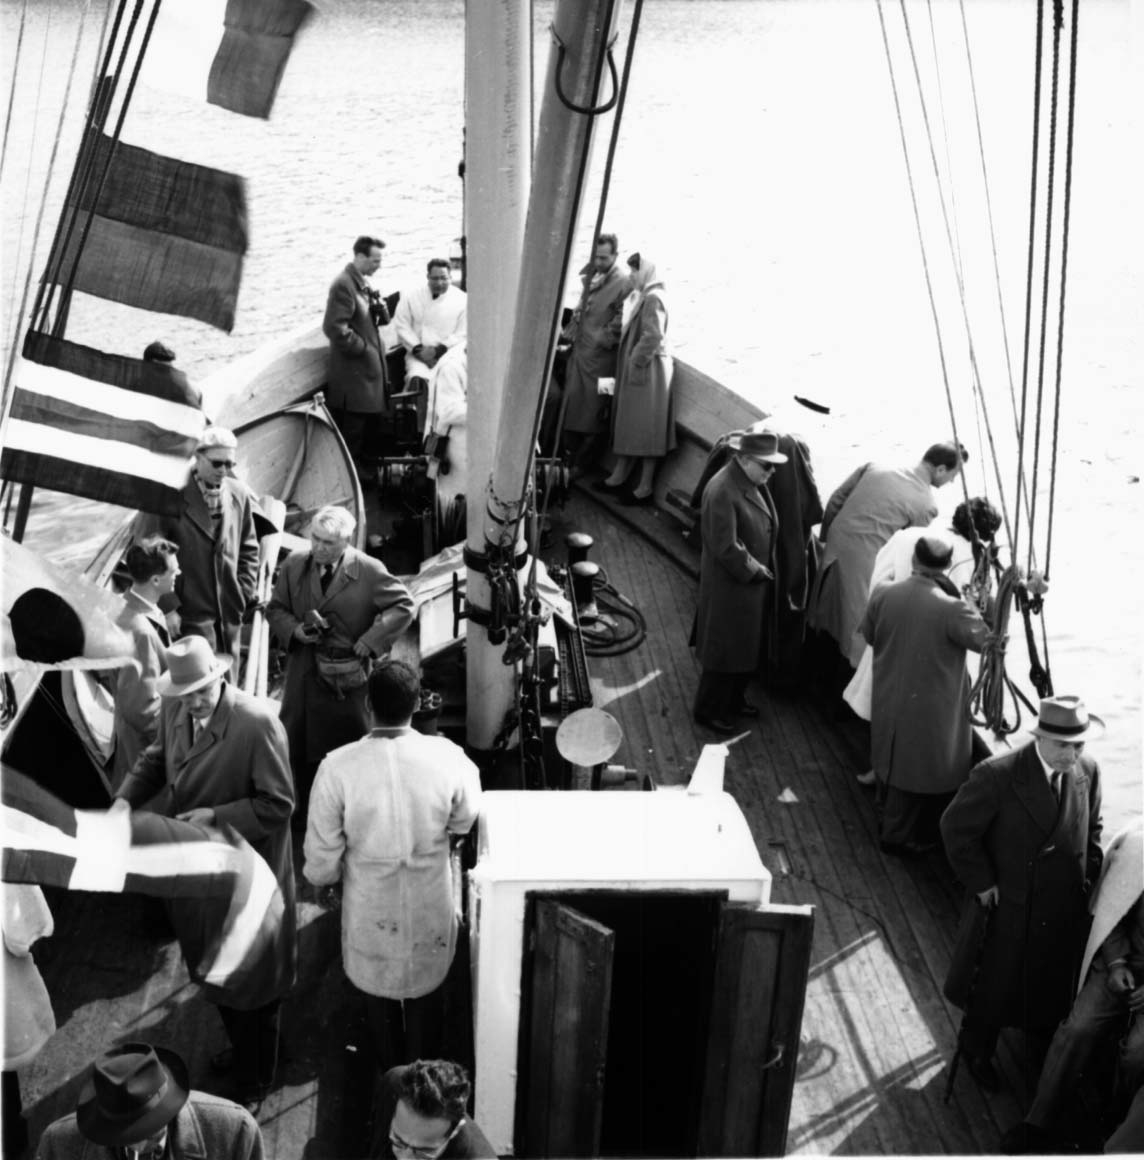 Gruppeportrett, flere personer samlet på dekk ombord i et fartøy "Telegrafverket".